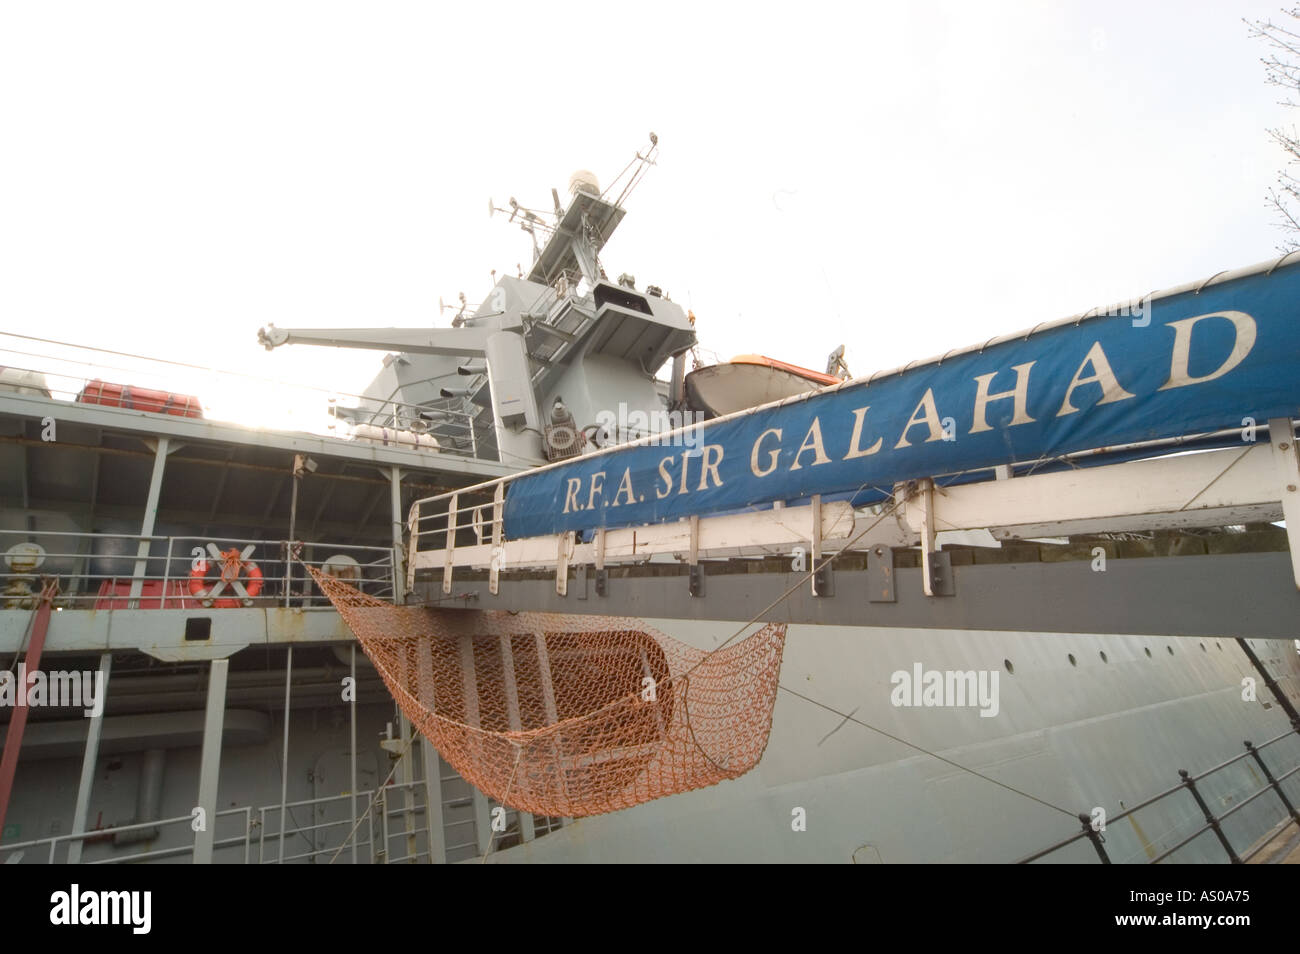 rfa supply ship sir galahad at cardiff bay wales uk great britain Stock Photo